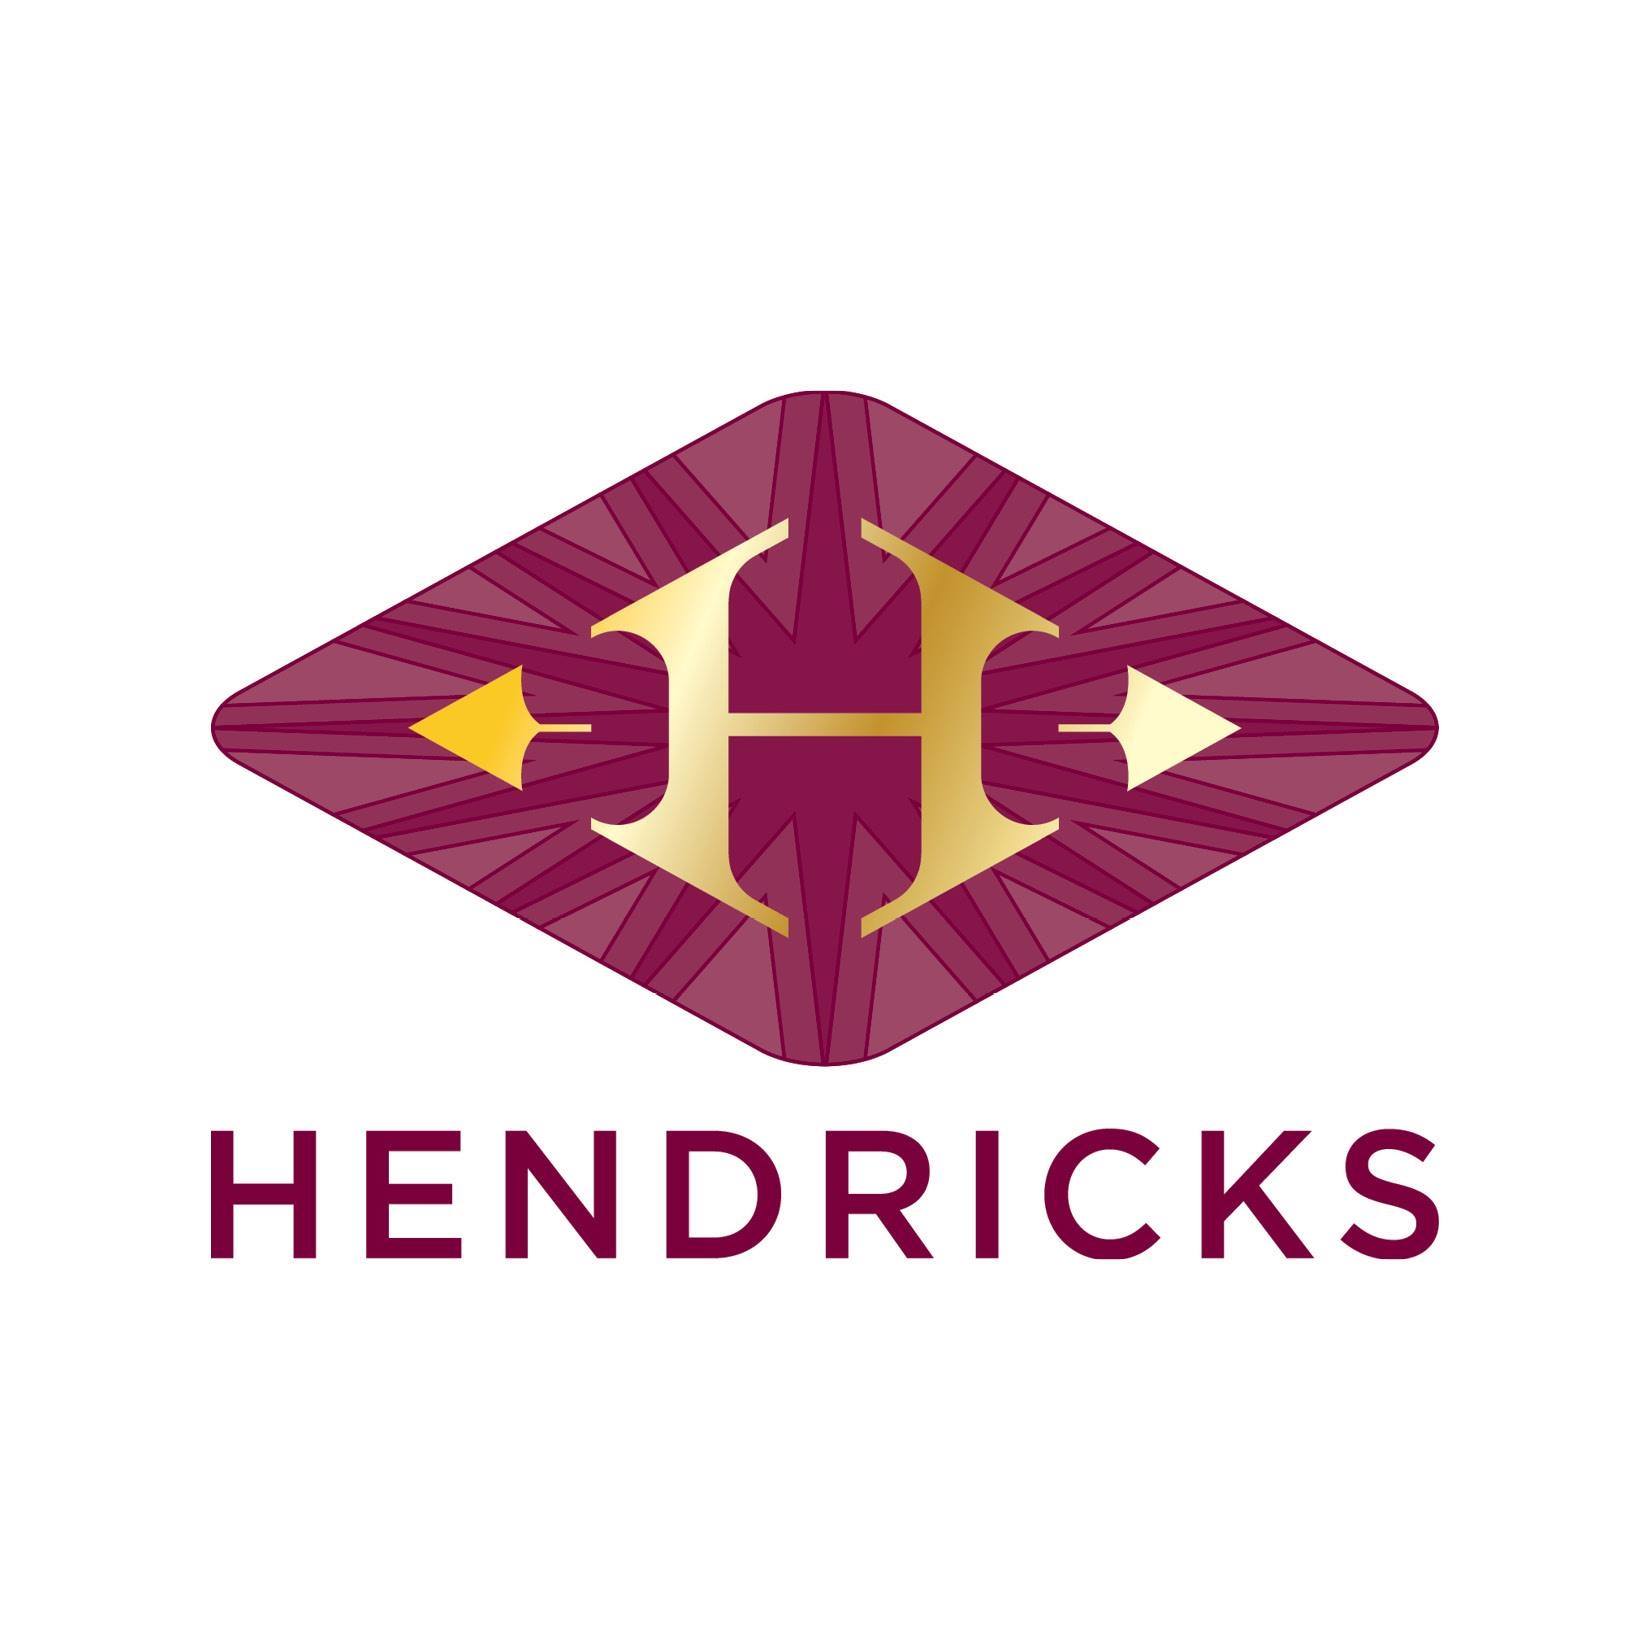 Hendricks Bar - Coming Soon in UAE